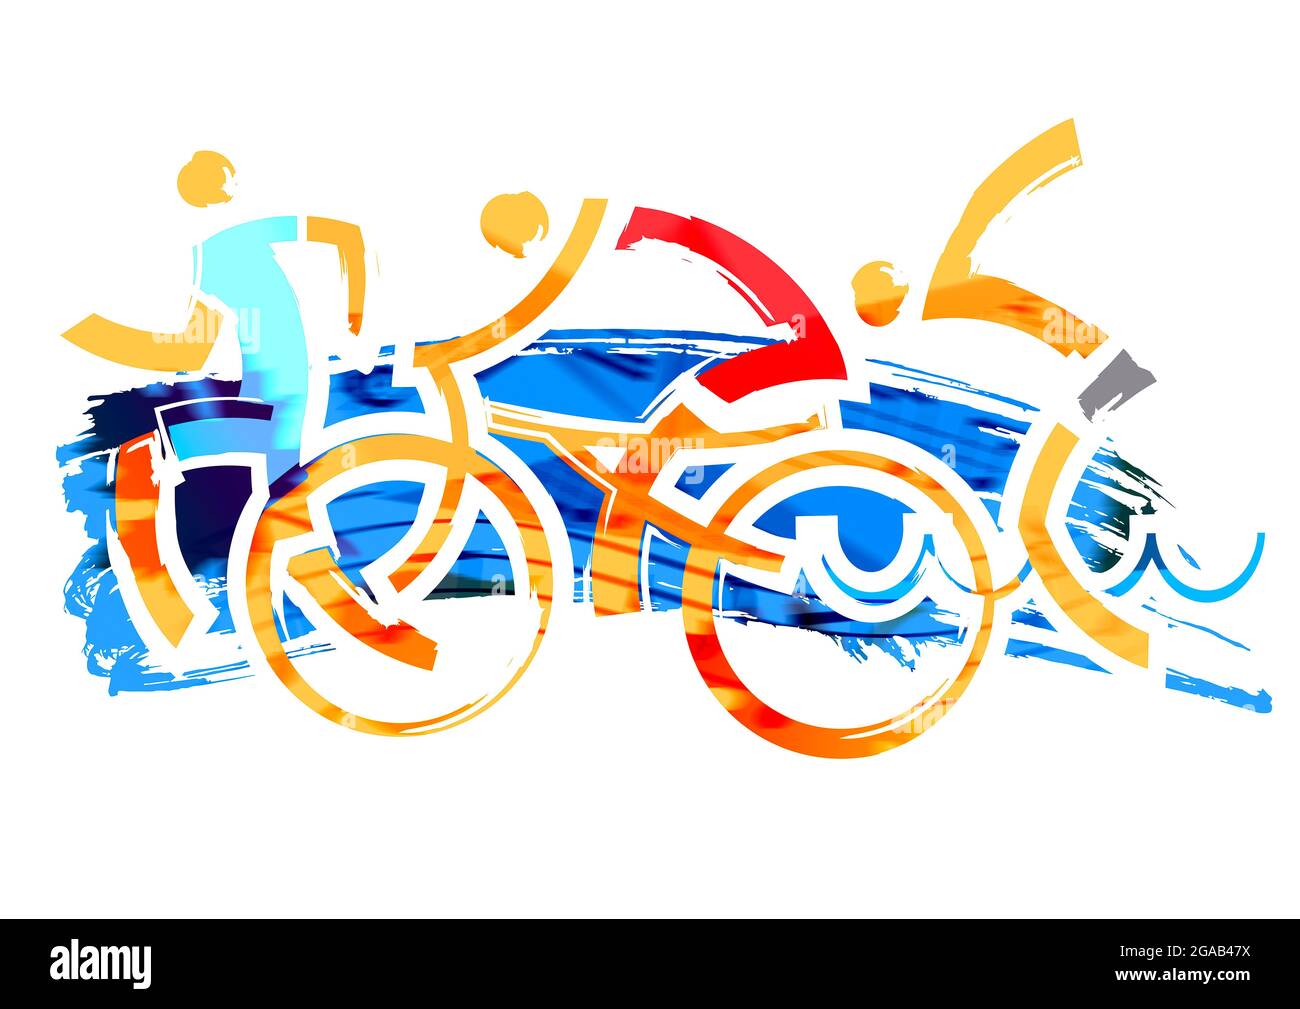 Gara Triathlon. Tre atleti triathlon, illustrazione stilizzata espressiva.Imitazione del disegno a pennello. Foto Stock